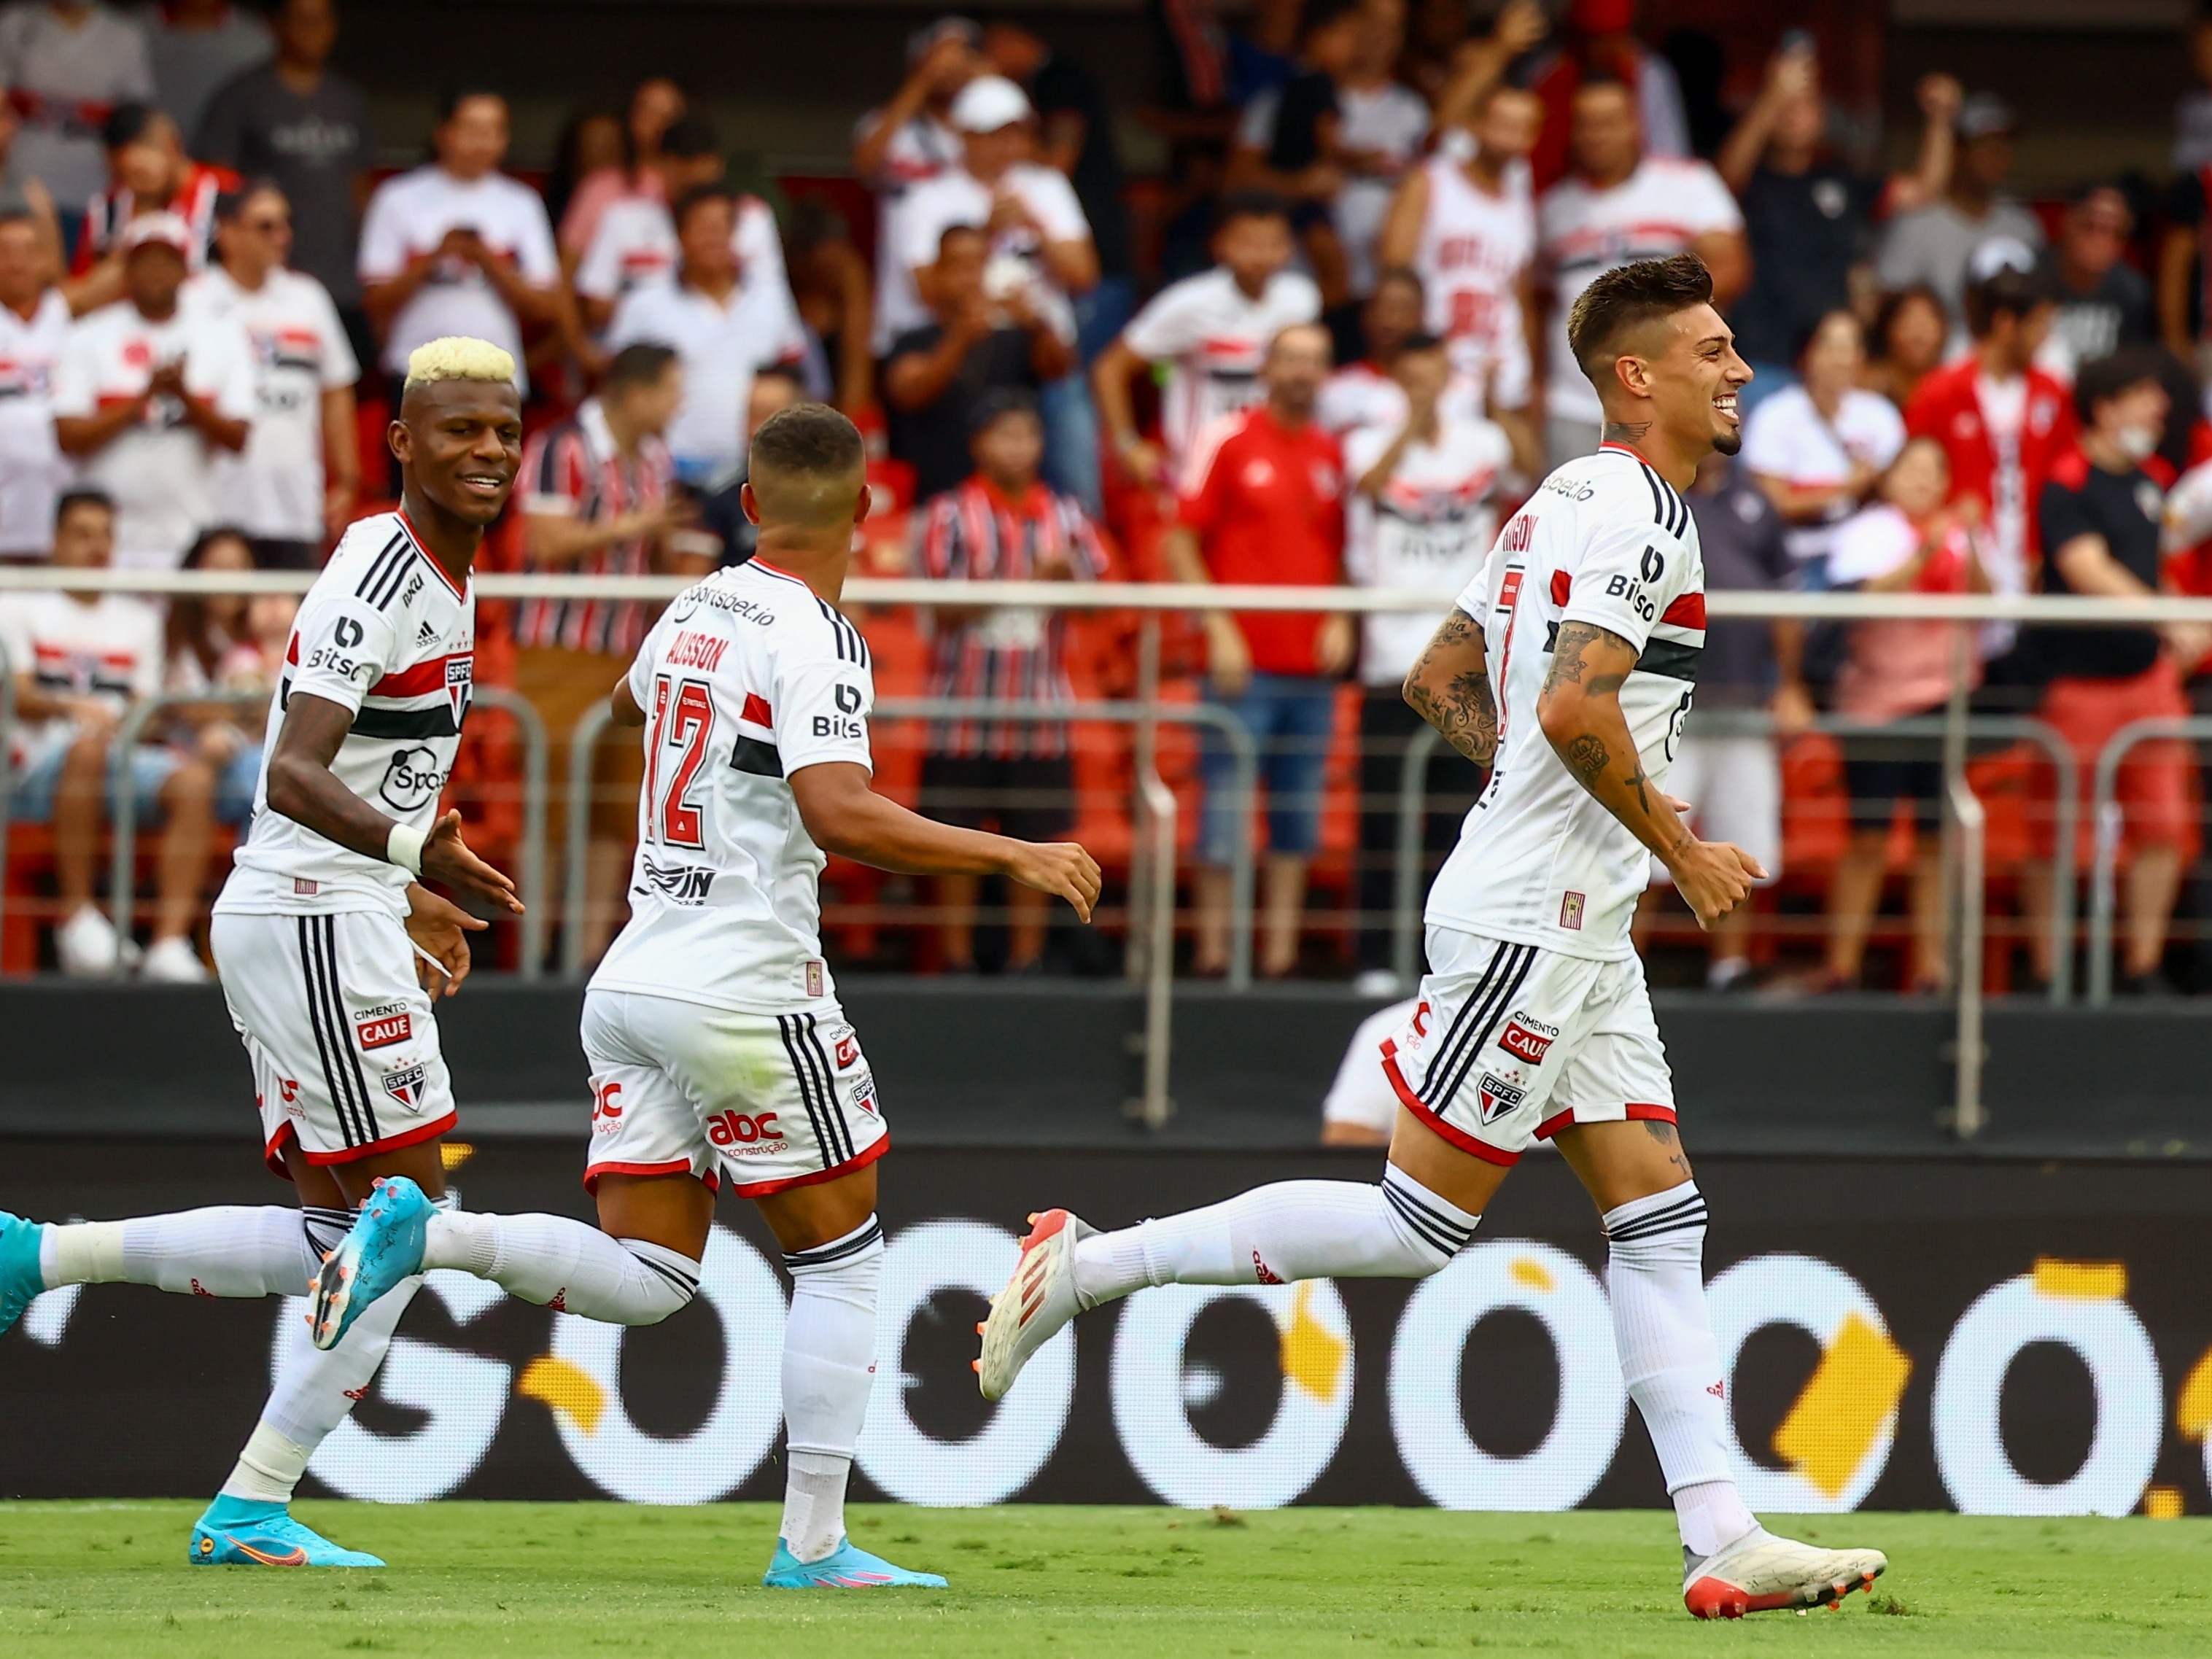 Campeonato Paulista 2022: veja onde assistir aos jogos, tabela e